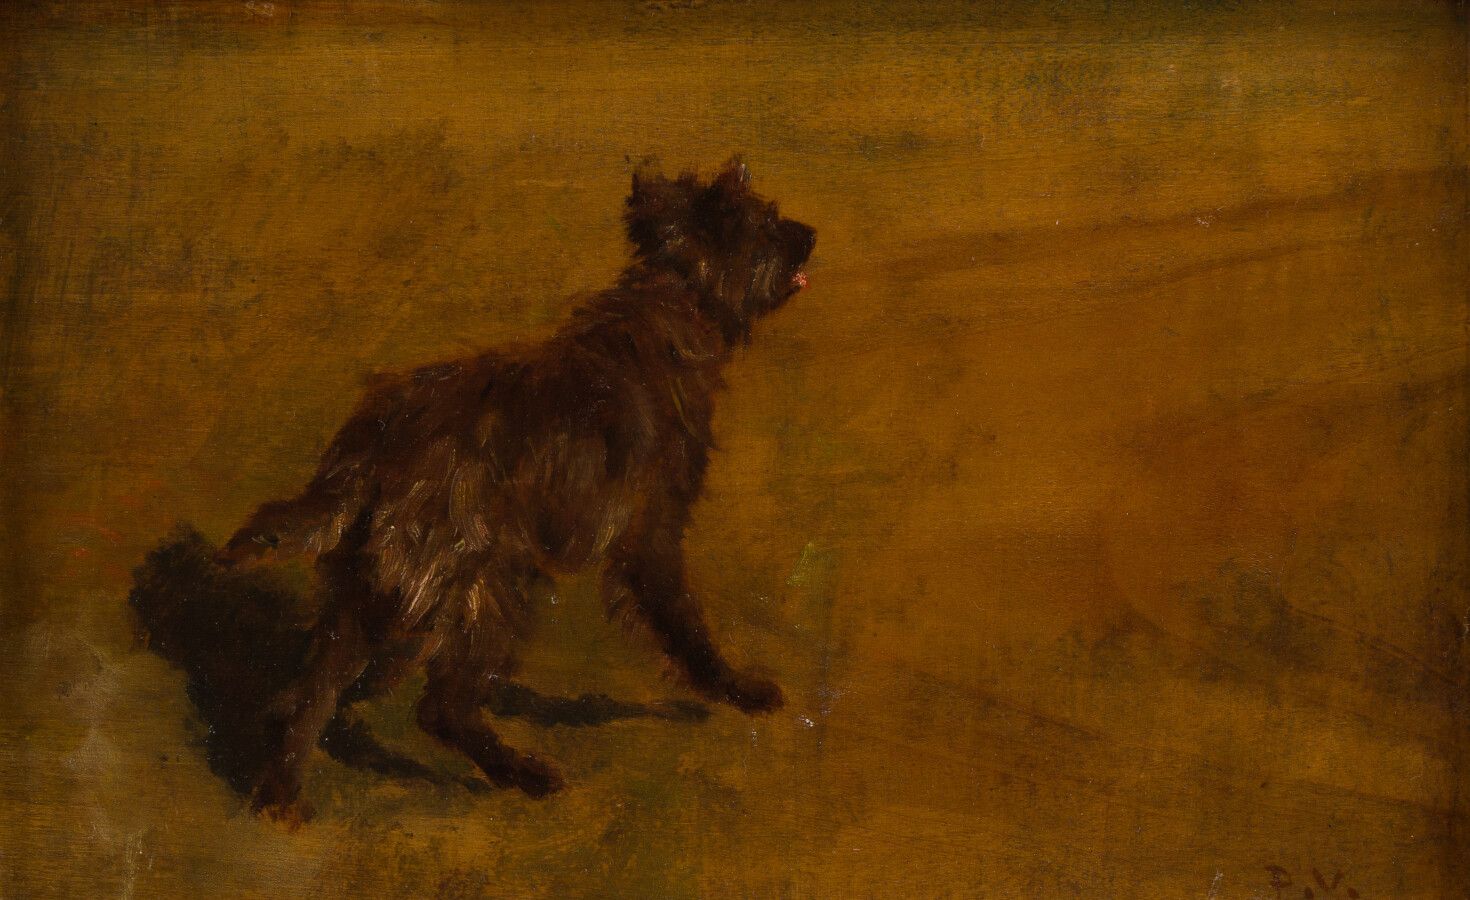 Null 36.保罗-瓦伊森(1841-1911)

犬类

板面油画，右下角有文字说明。

17 x 27厘米。